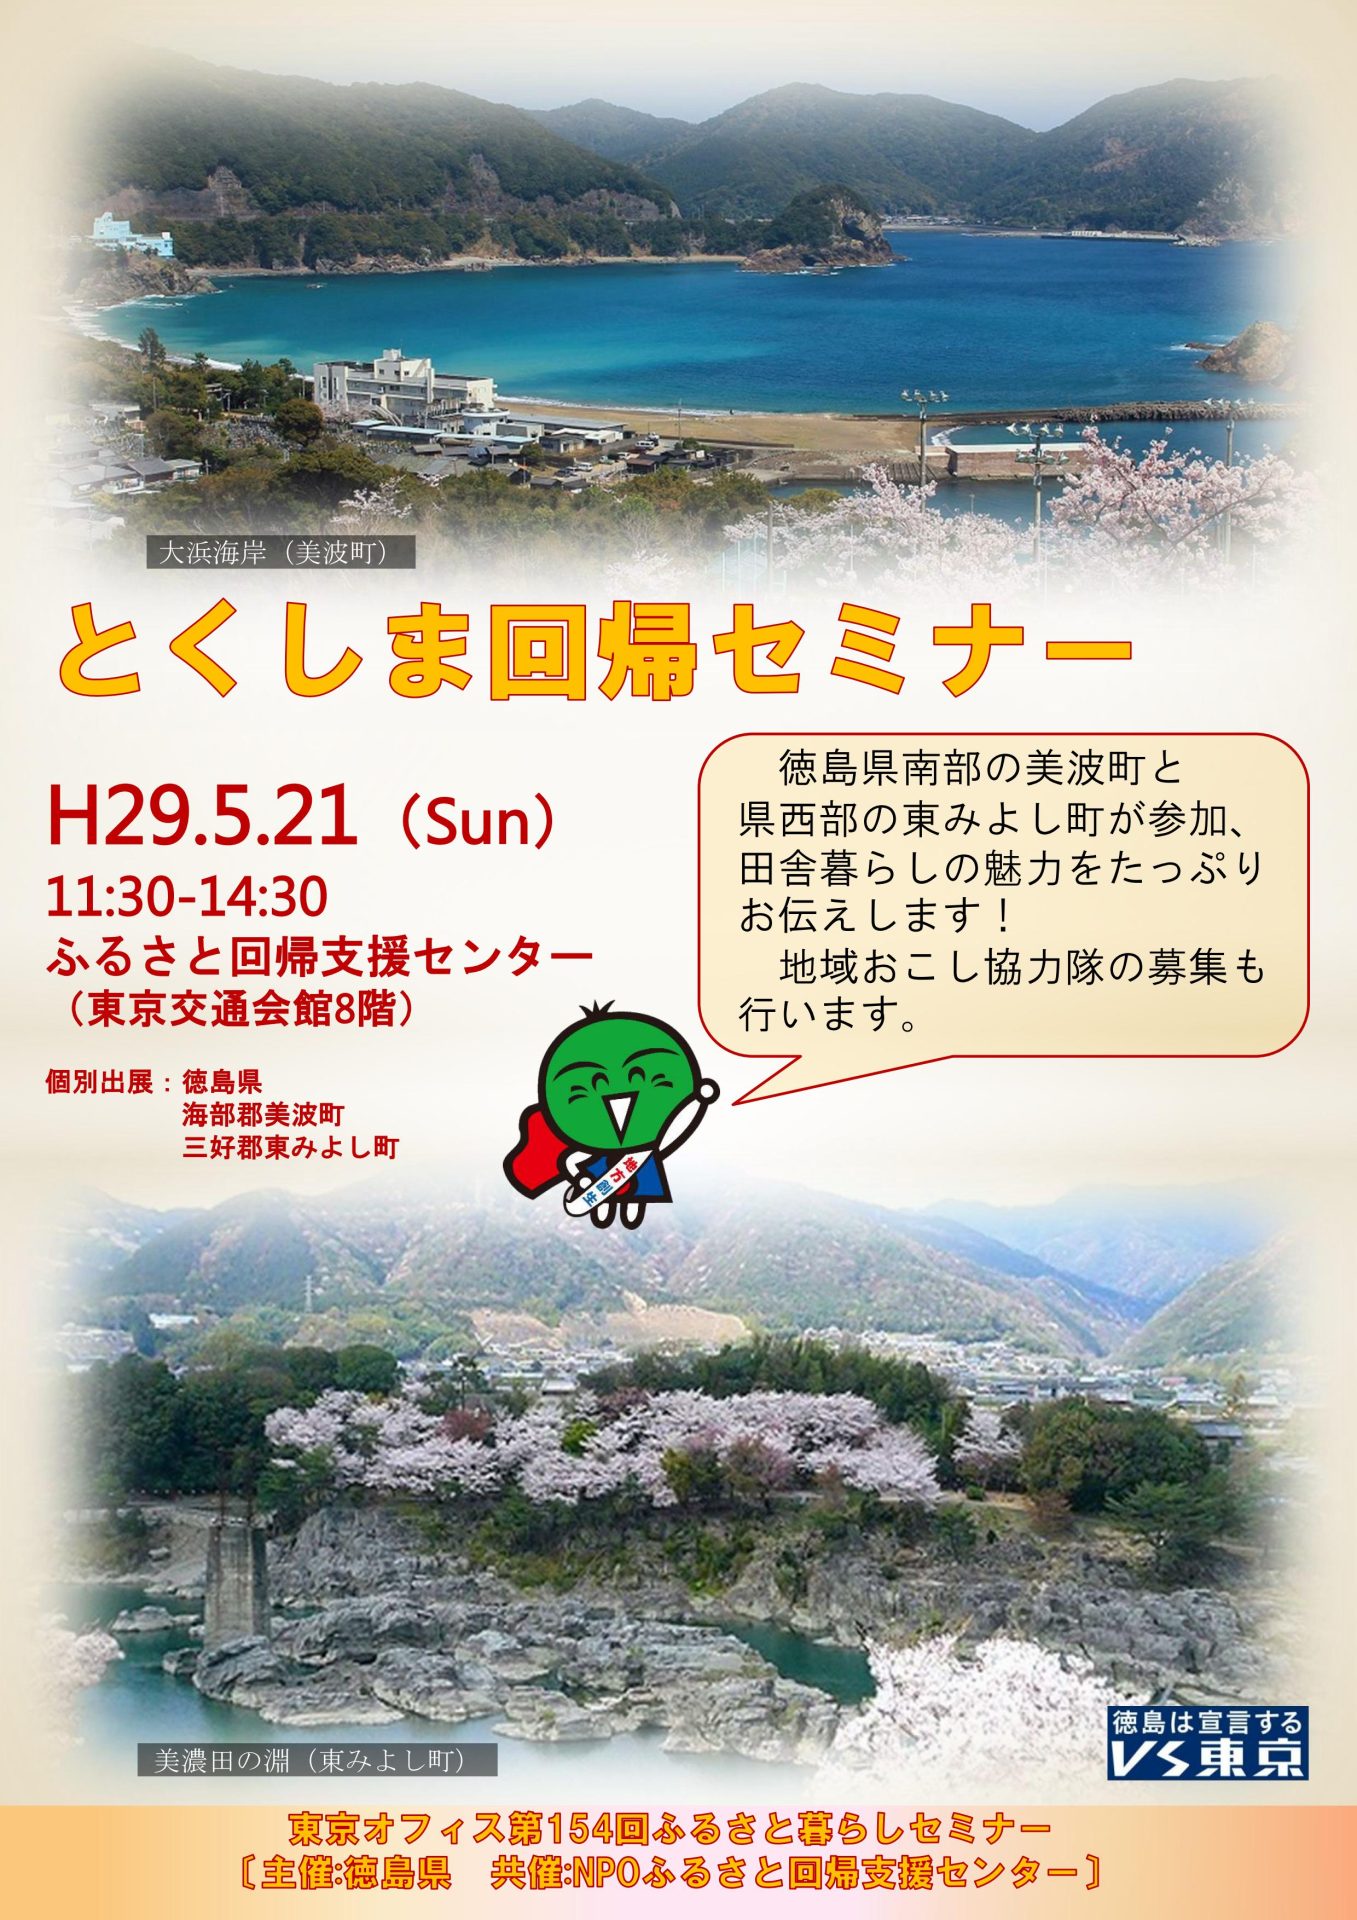 【徳島】とくしま回帰セミナー | 移住関連イベント情報